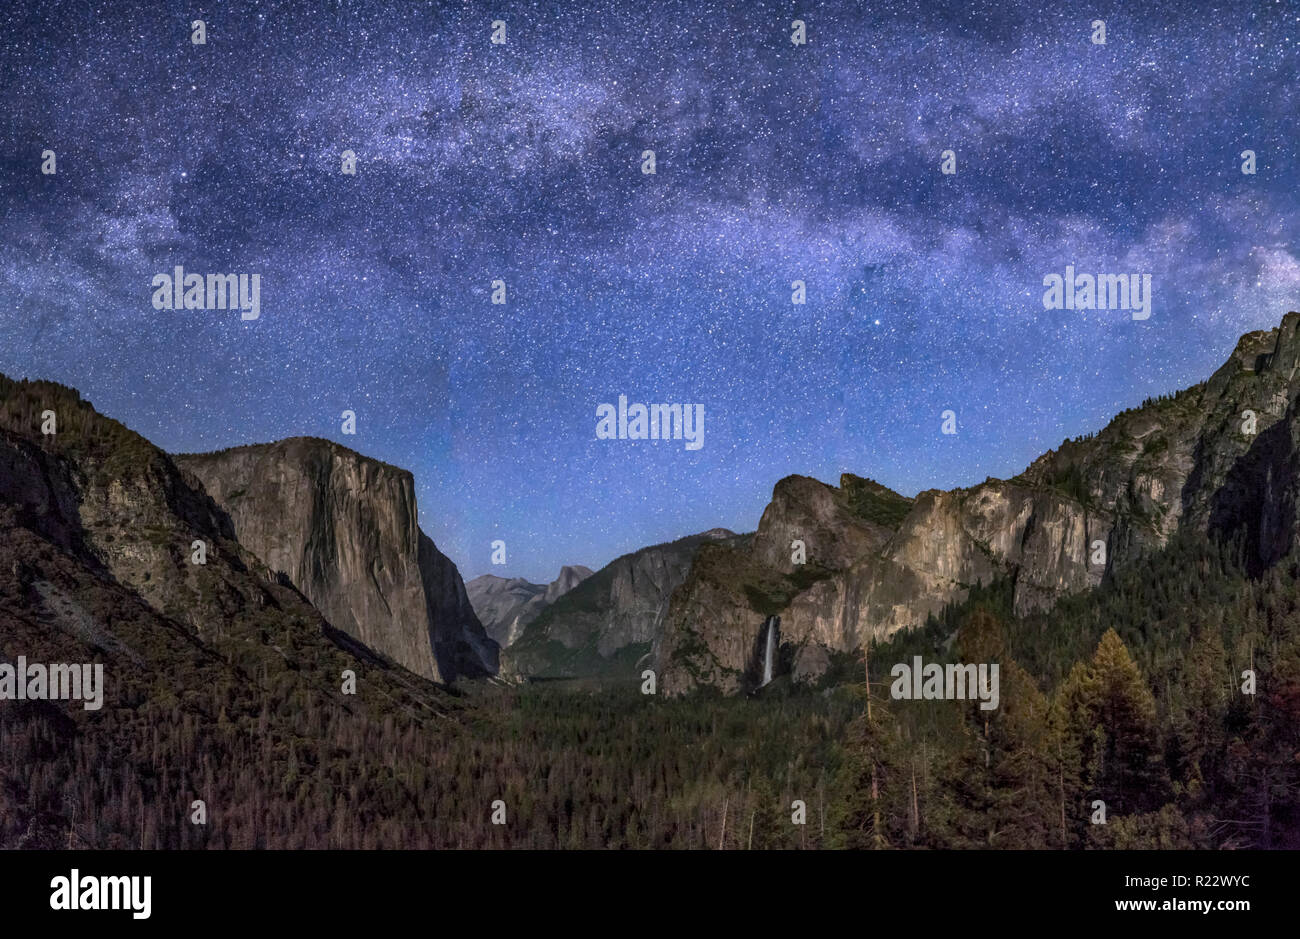 La vallée Yosemite, à partir de la vue de tunnel, est doucement éclairée par la lune avec réglage de la Voie lactée au-dessus. Banque D'Images